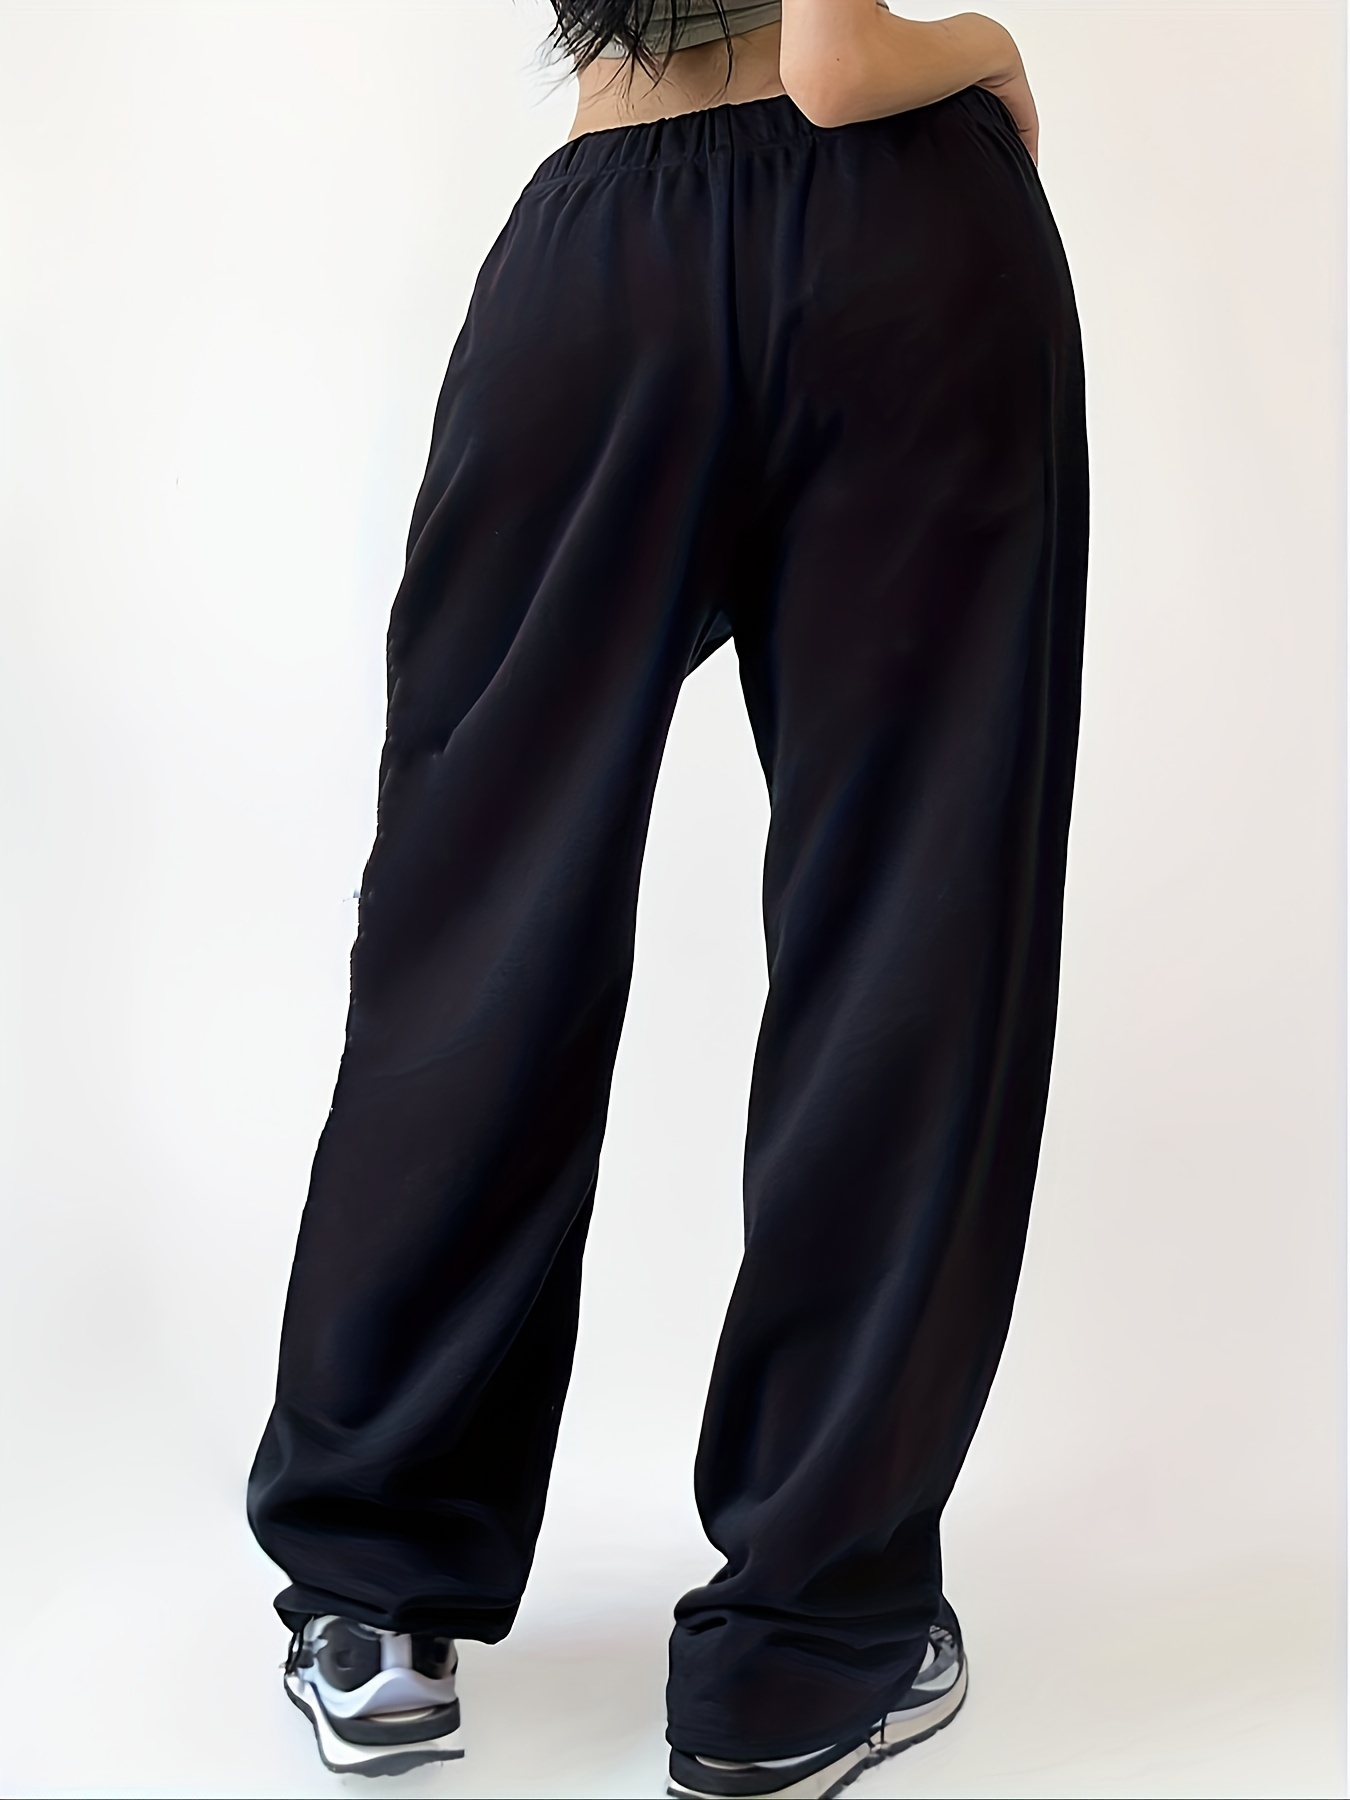 Pantalones deportivos casuales para mujer con cintura alta, flojos